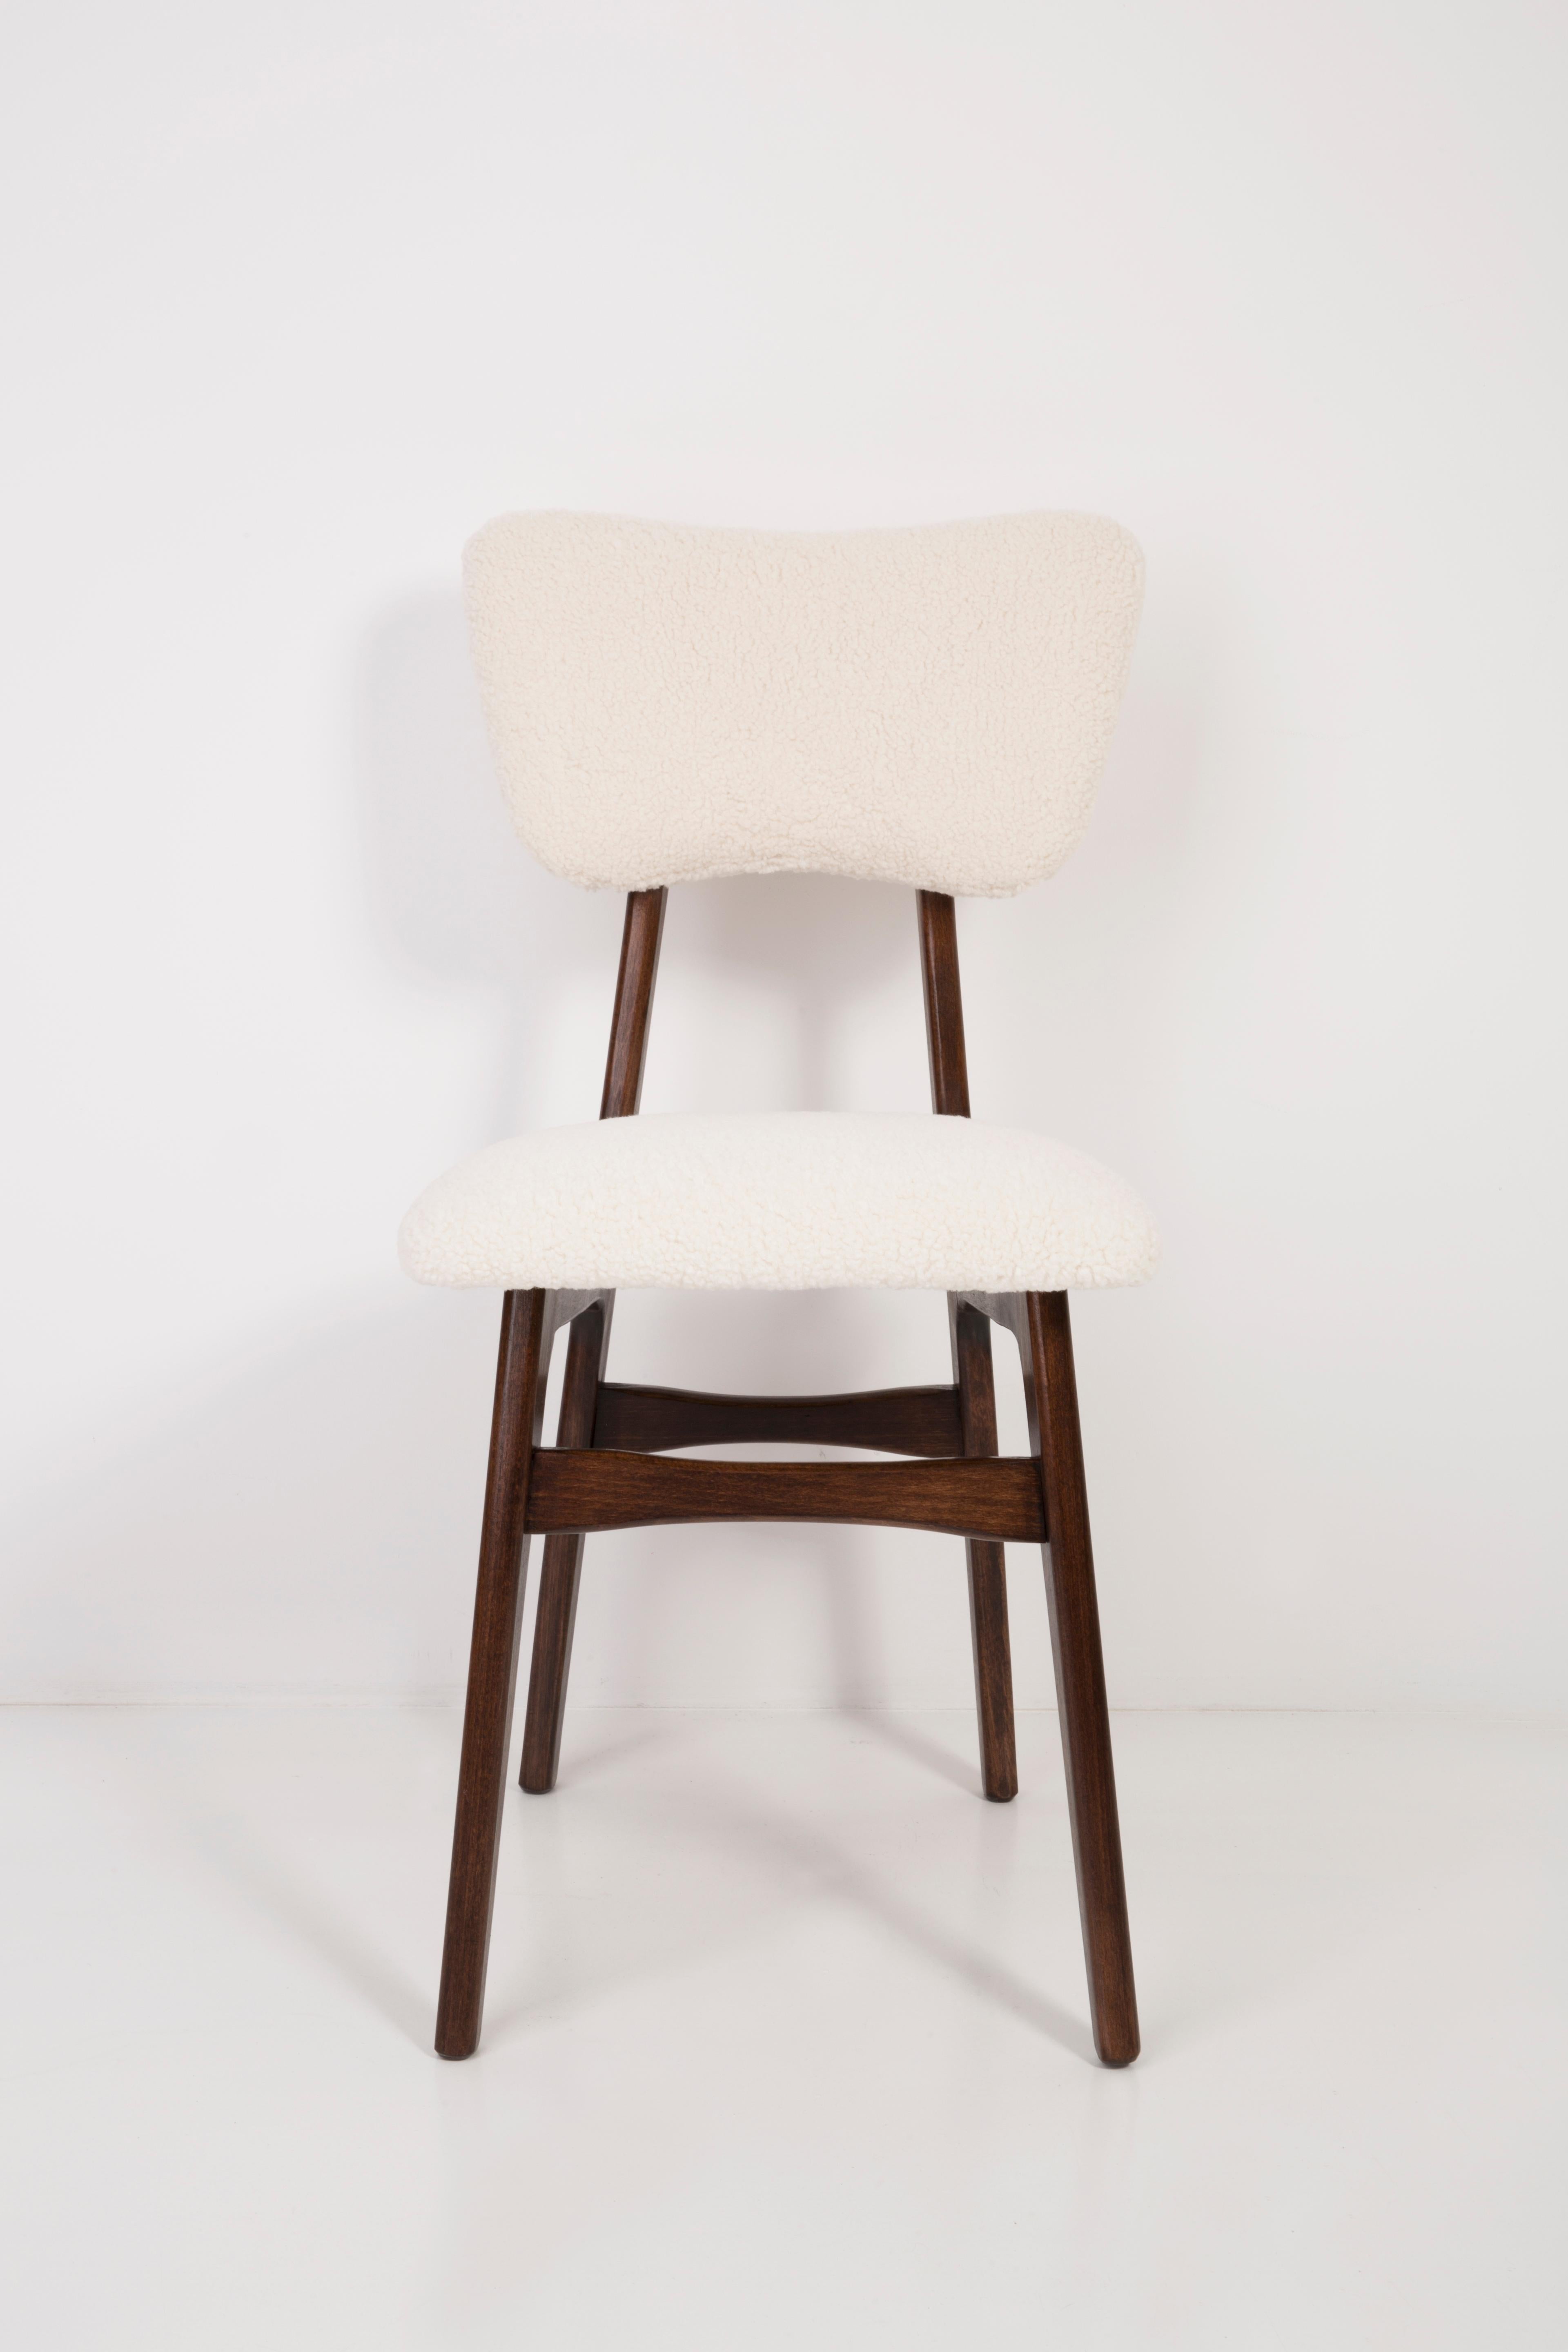 Chaise conçue par le professeur Rajmund Halas. Fabriqué en bois de hêtre. La chaise a fait l'objet d'une rénovation complète de la tapisserie d'ameublement ; les boiseries ont été rafraîchies. L'assise et le dossier sont habillés d'un tissu bouclé